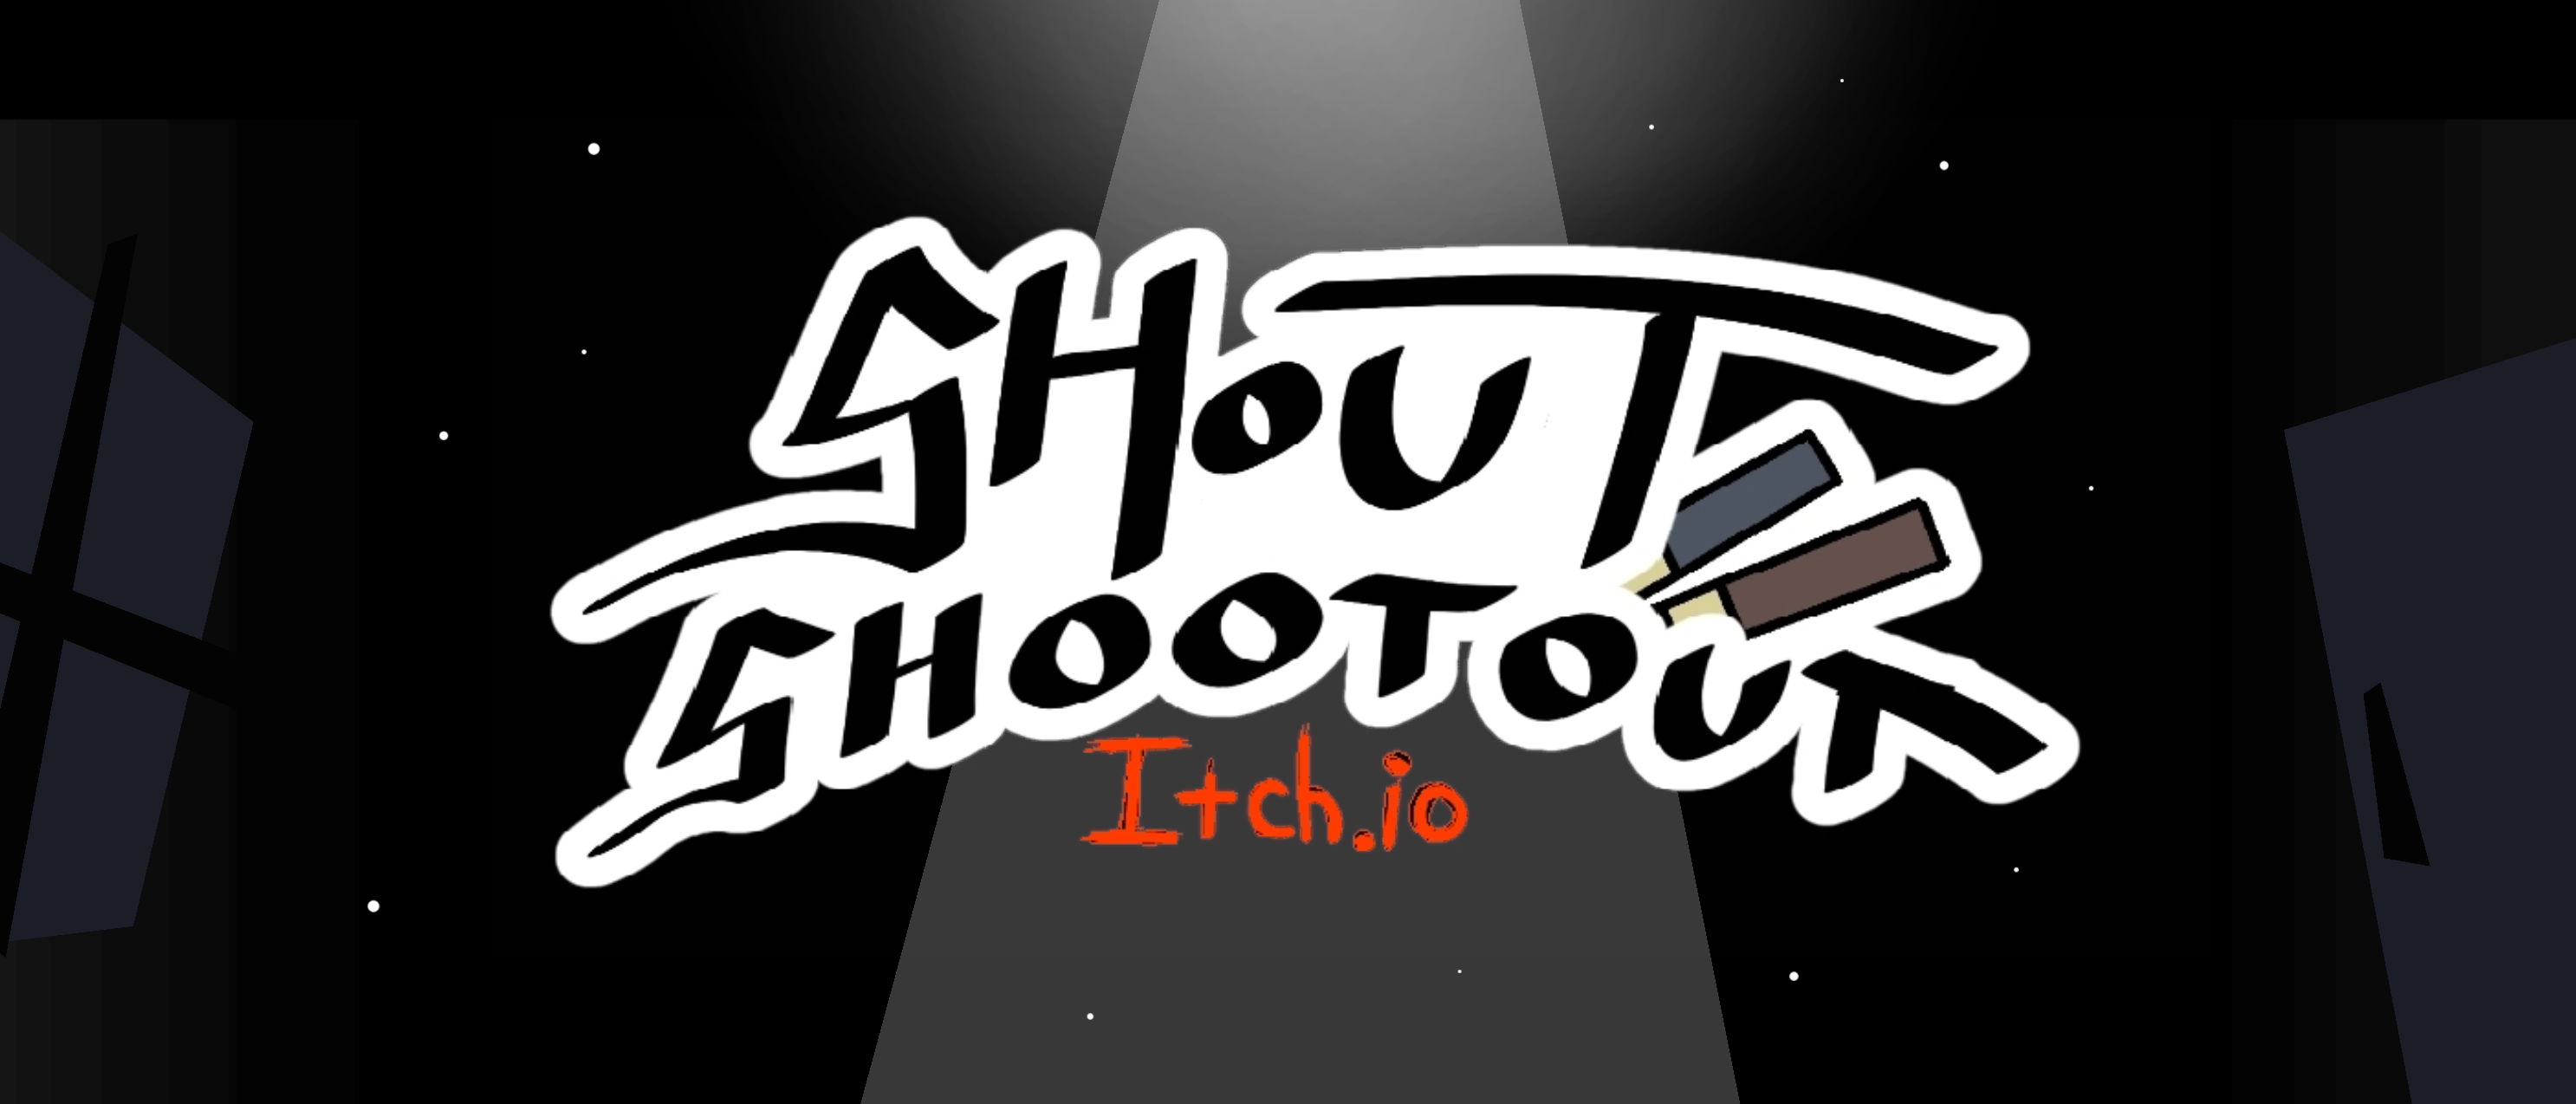 Shout Shootout